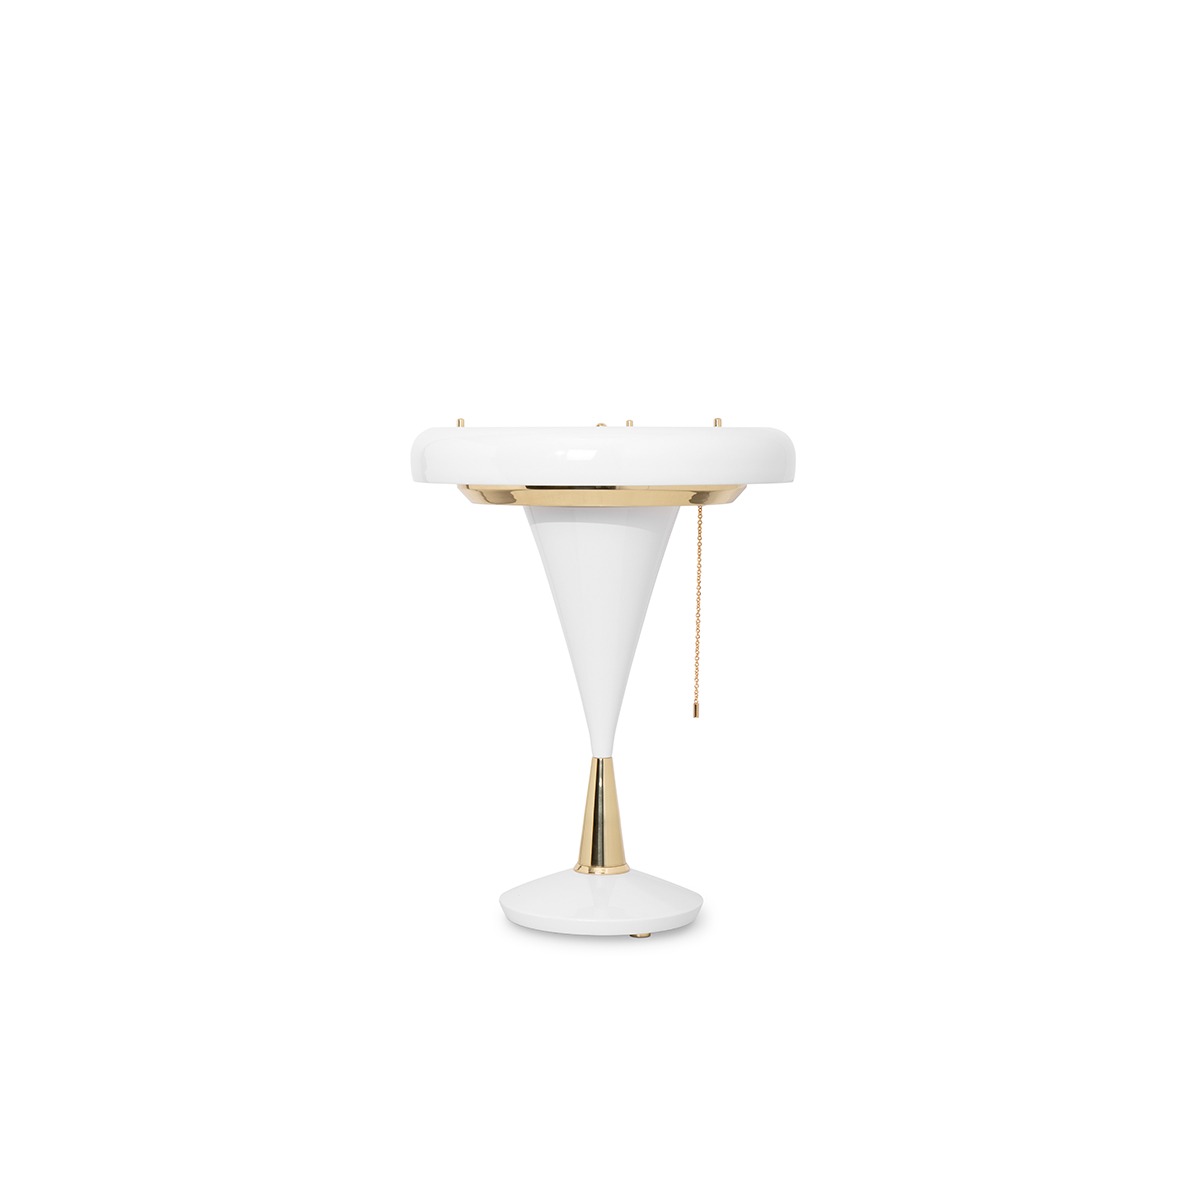 DELIGHTFULL CARTER TABLE LAMP Botti Floor Lamp